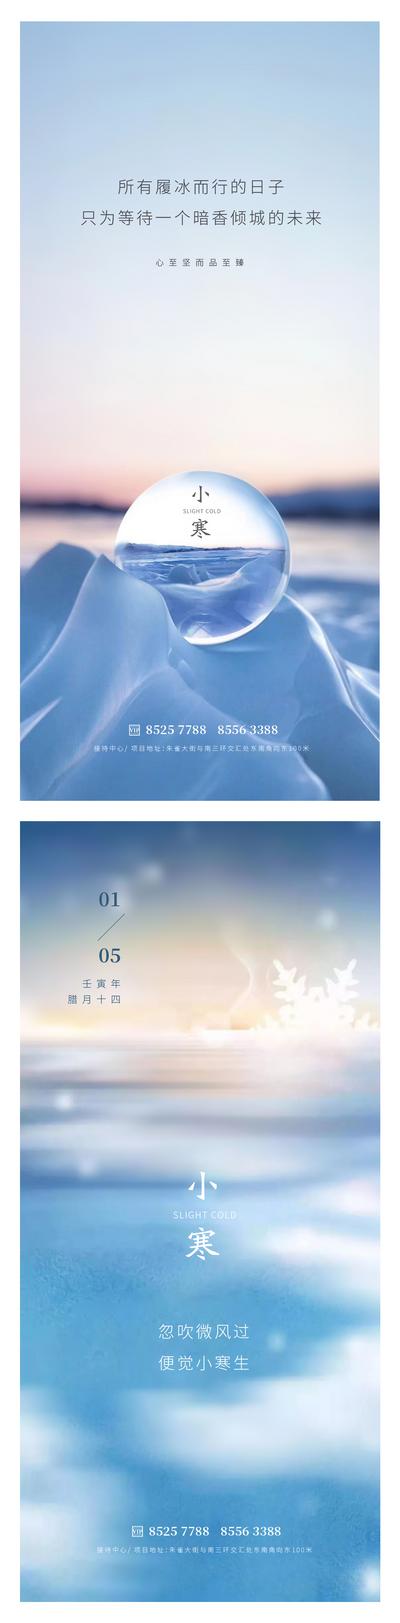 南门网 广告 海报 地产 小寒 节气 天空 美景 水球 雪 冰 简洁 干净